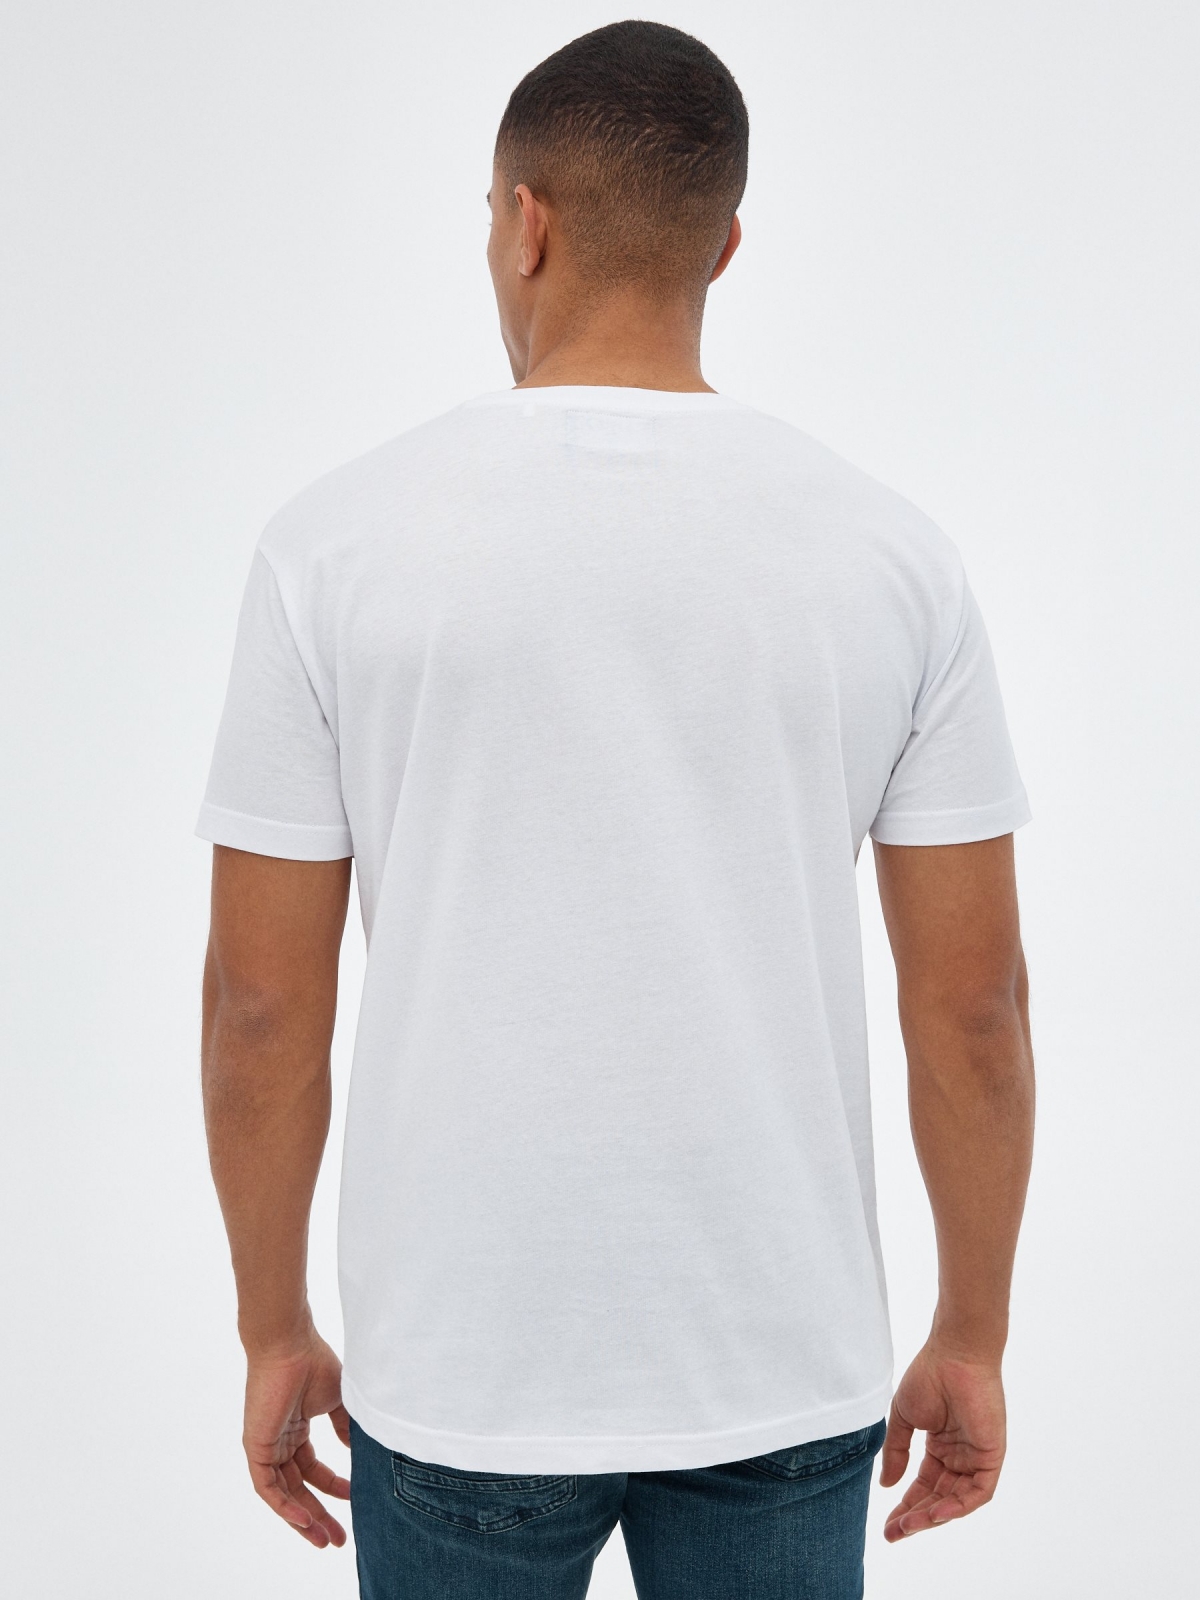 T-shirt multicolor do crânio branco vista meia traseira